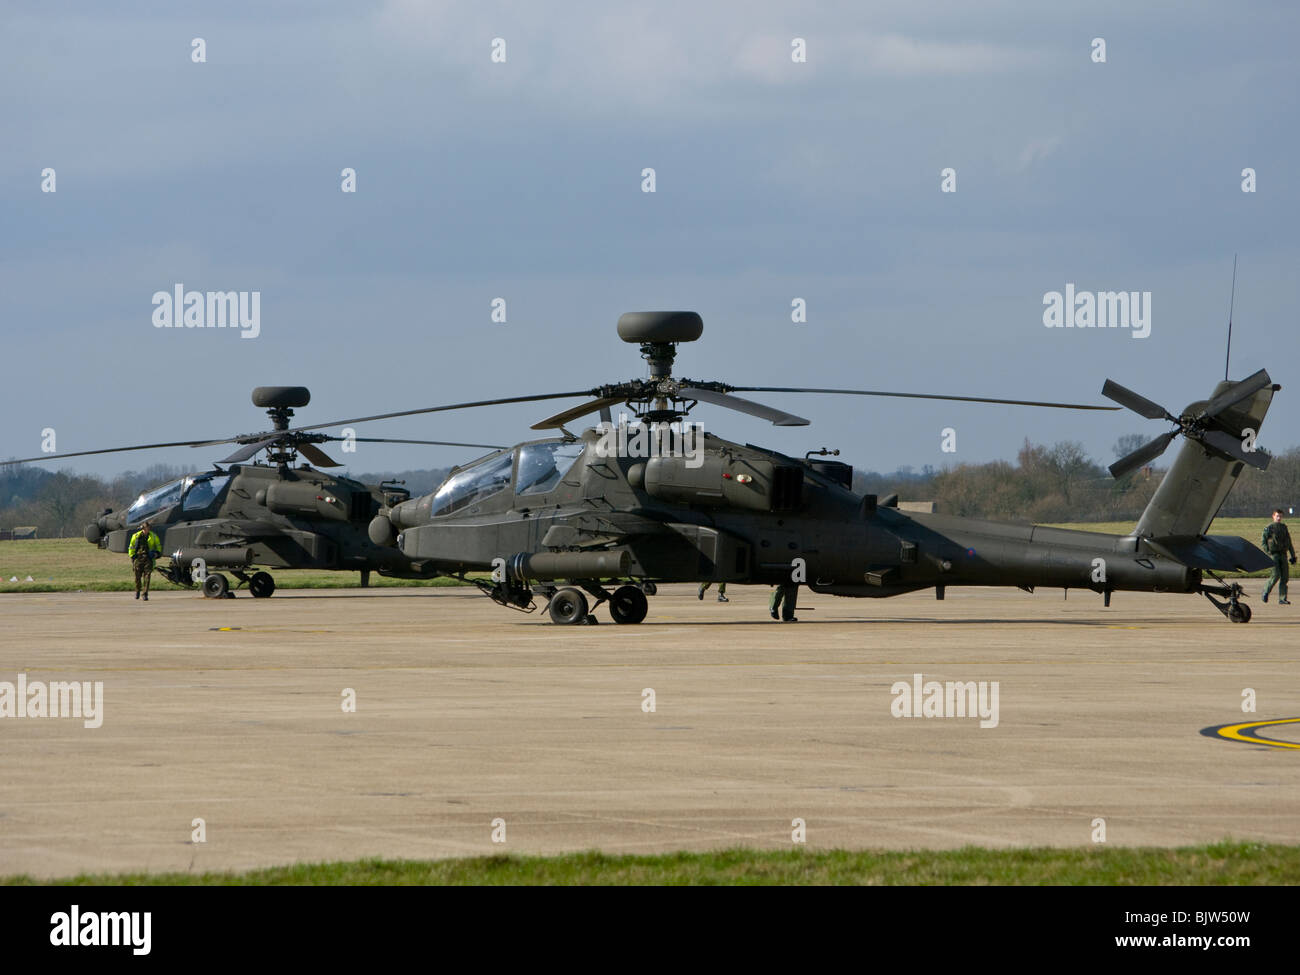 2 helicópteros de ataque del ejército británico Westland WAH-64 Apache MK1 el arco sobre el asfalto en Wattisham Airfield Suffolk Foto de stock